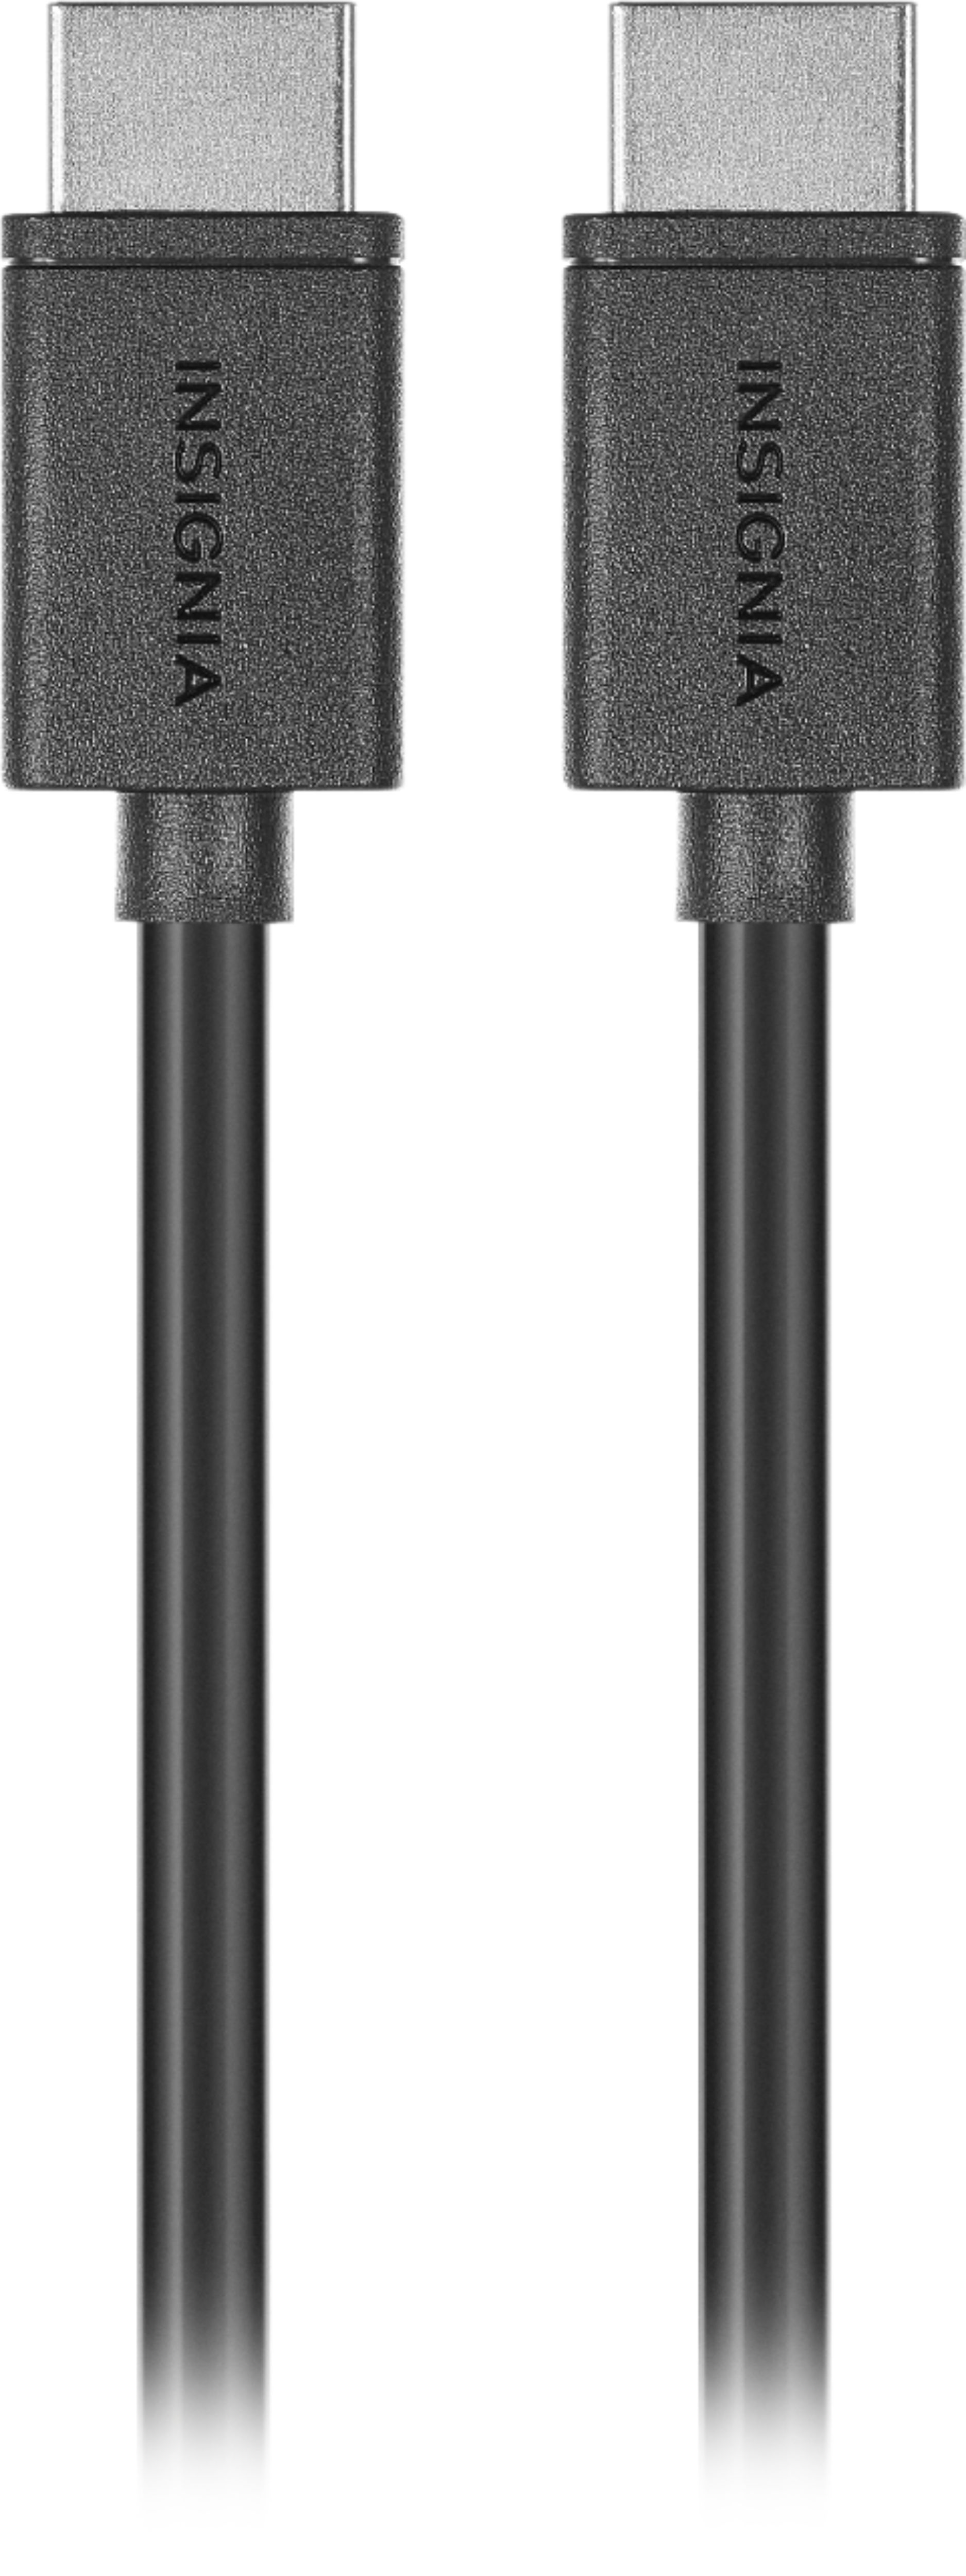 Insignia™ - 12' 4K Ultra HD HDMI Cable - Black